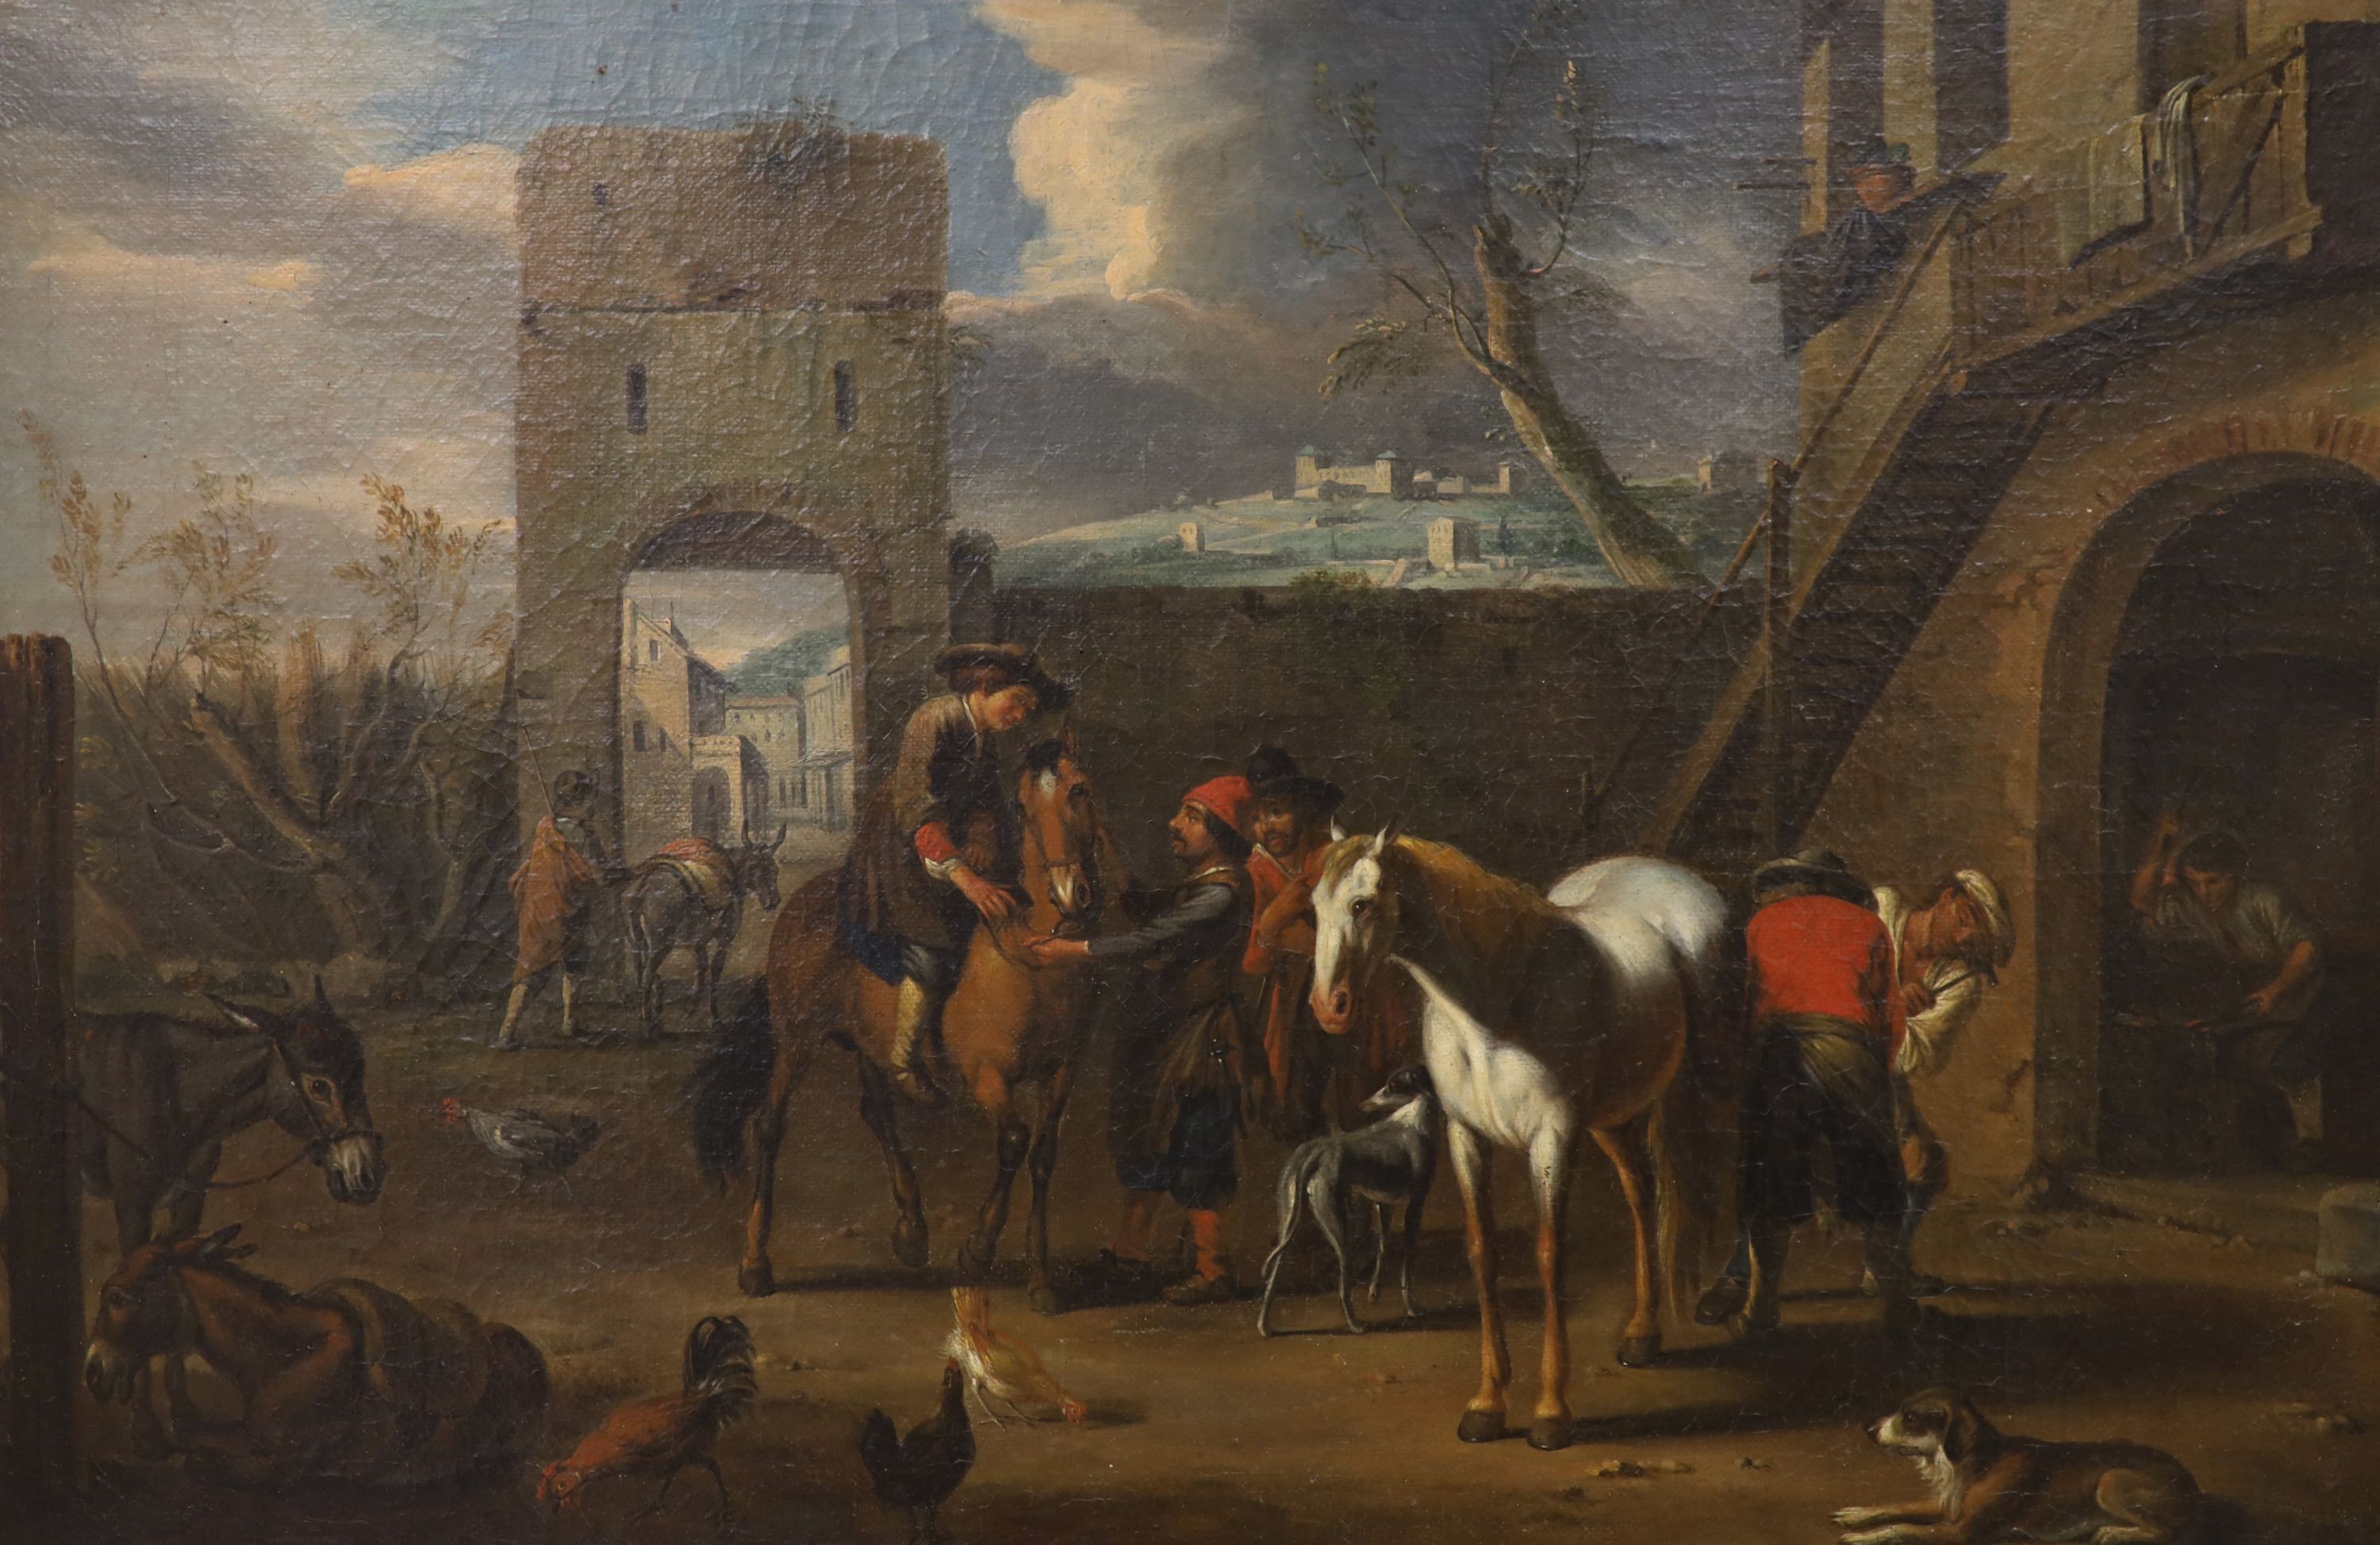 Circle of Jacob de Heusch (1657-1701) Dutch. Travellers at an inn, oil on canvas, 16